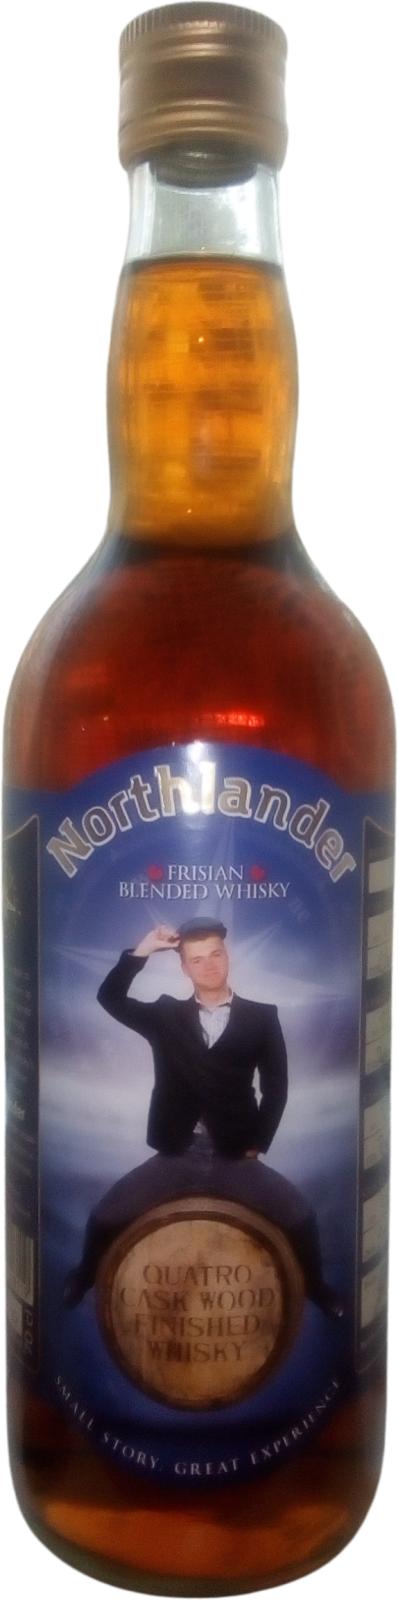 Northlander Frisian Blended Whisky 42.98.102.227 40% 700ml